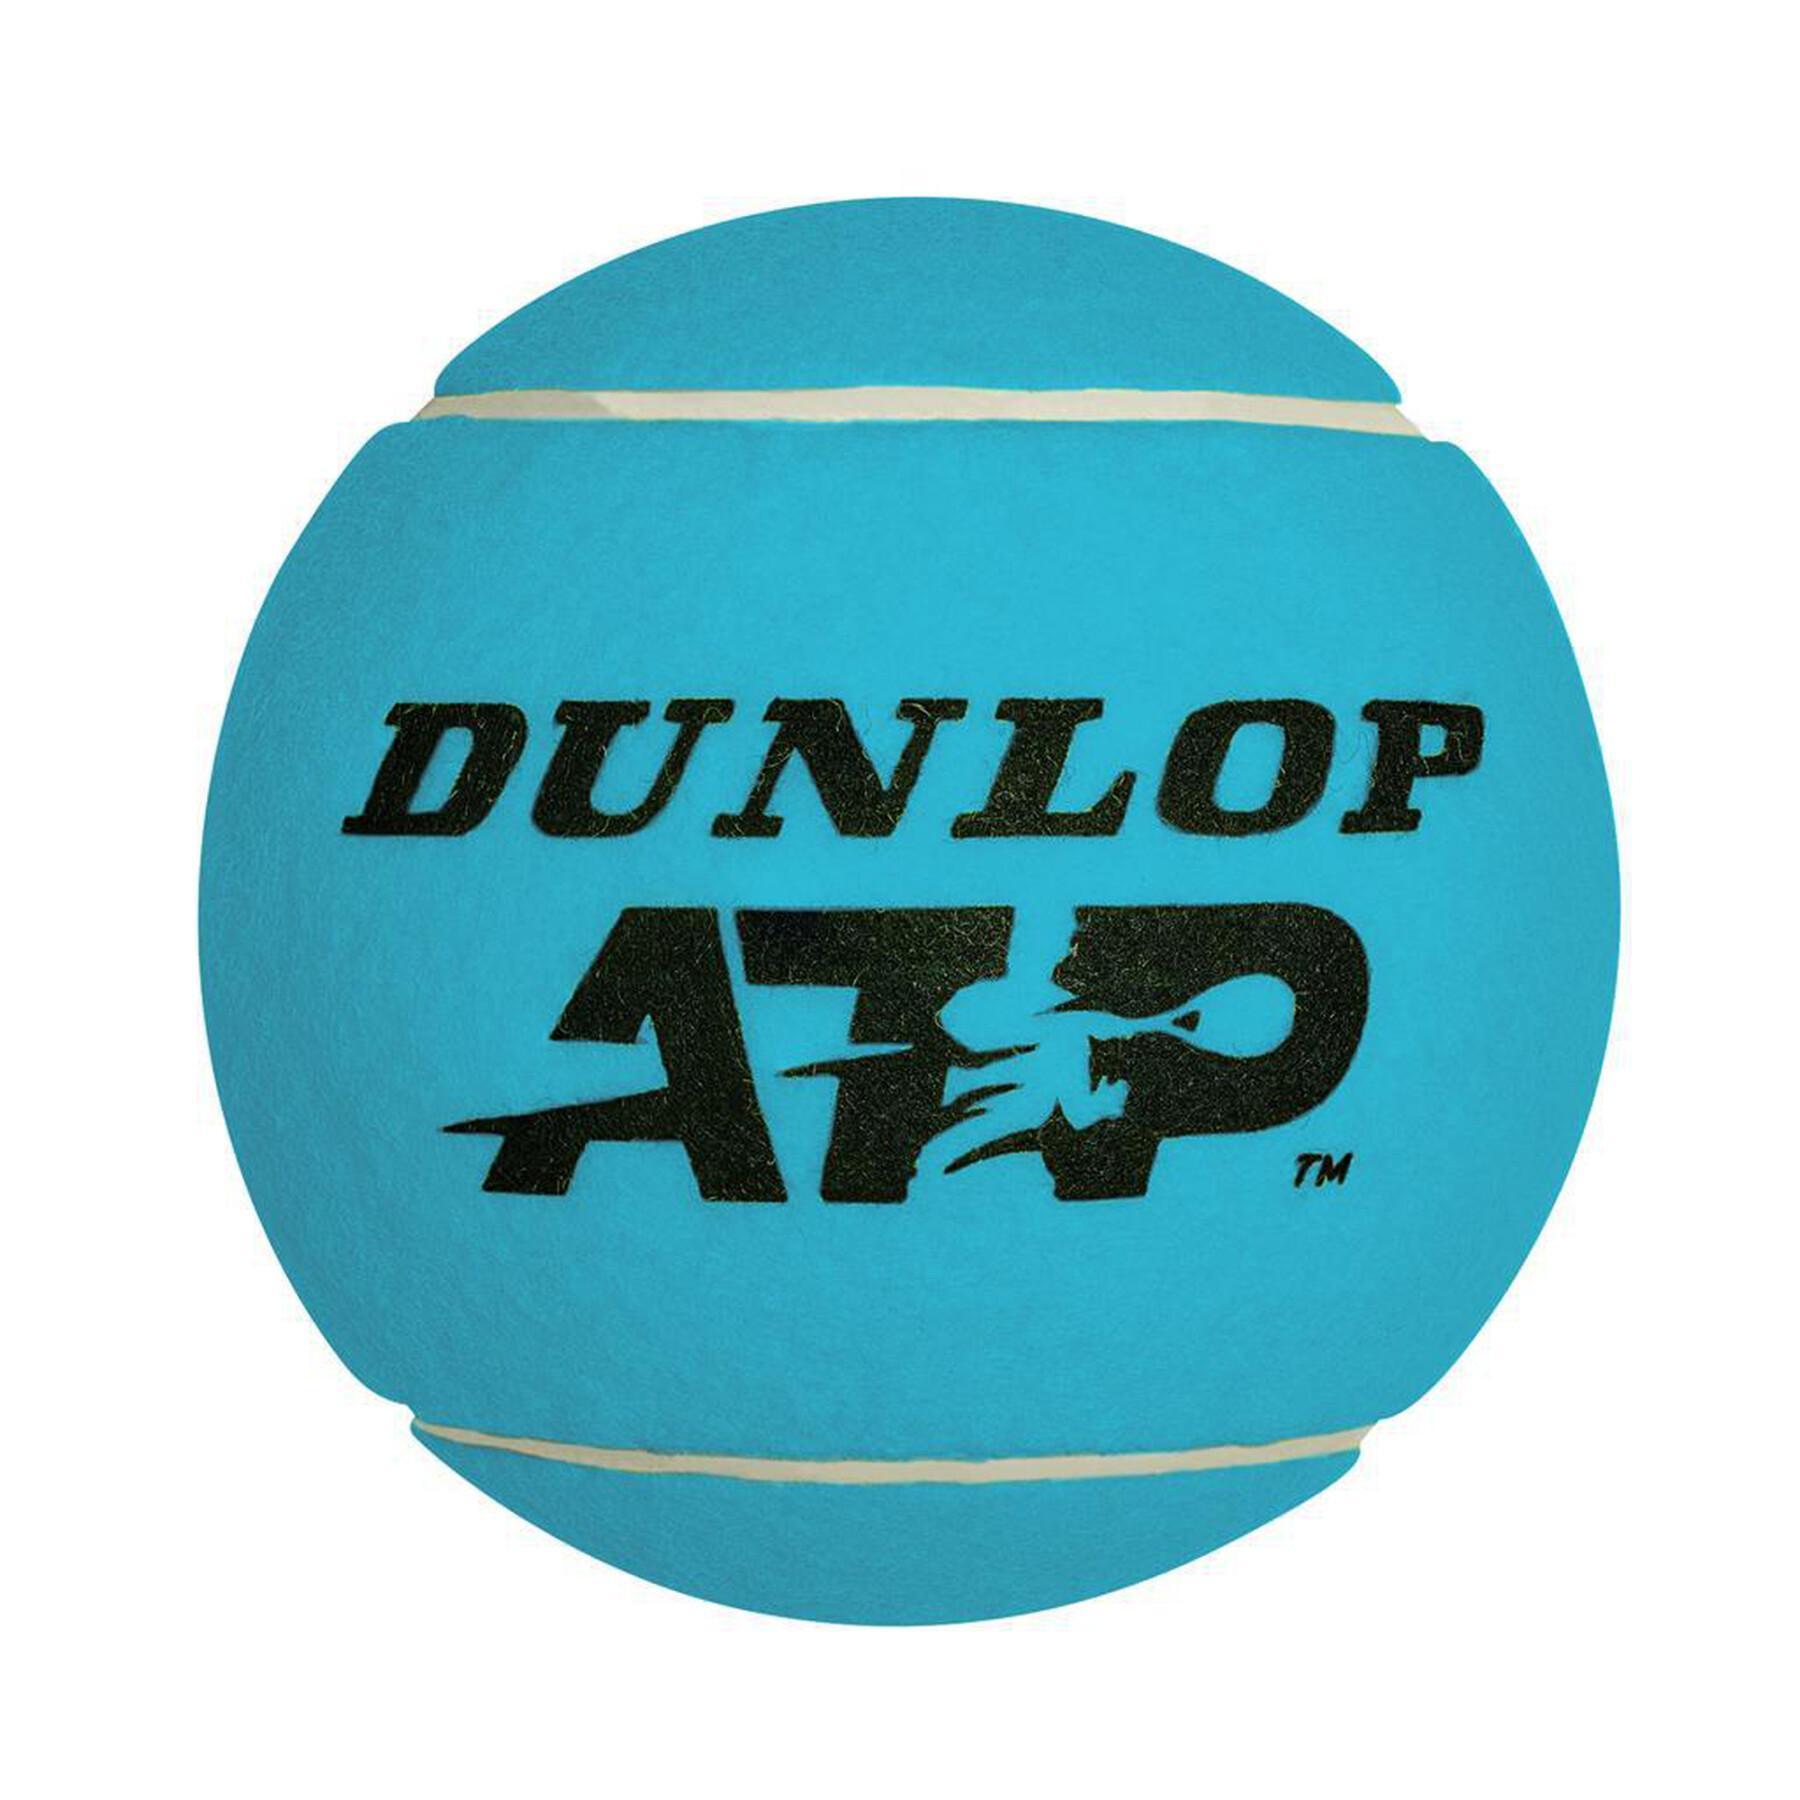 Olbrzymia piłka tenisowa Dunlop